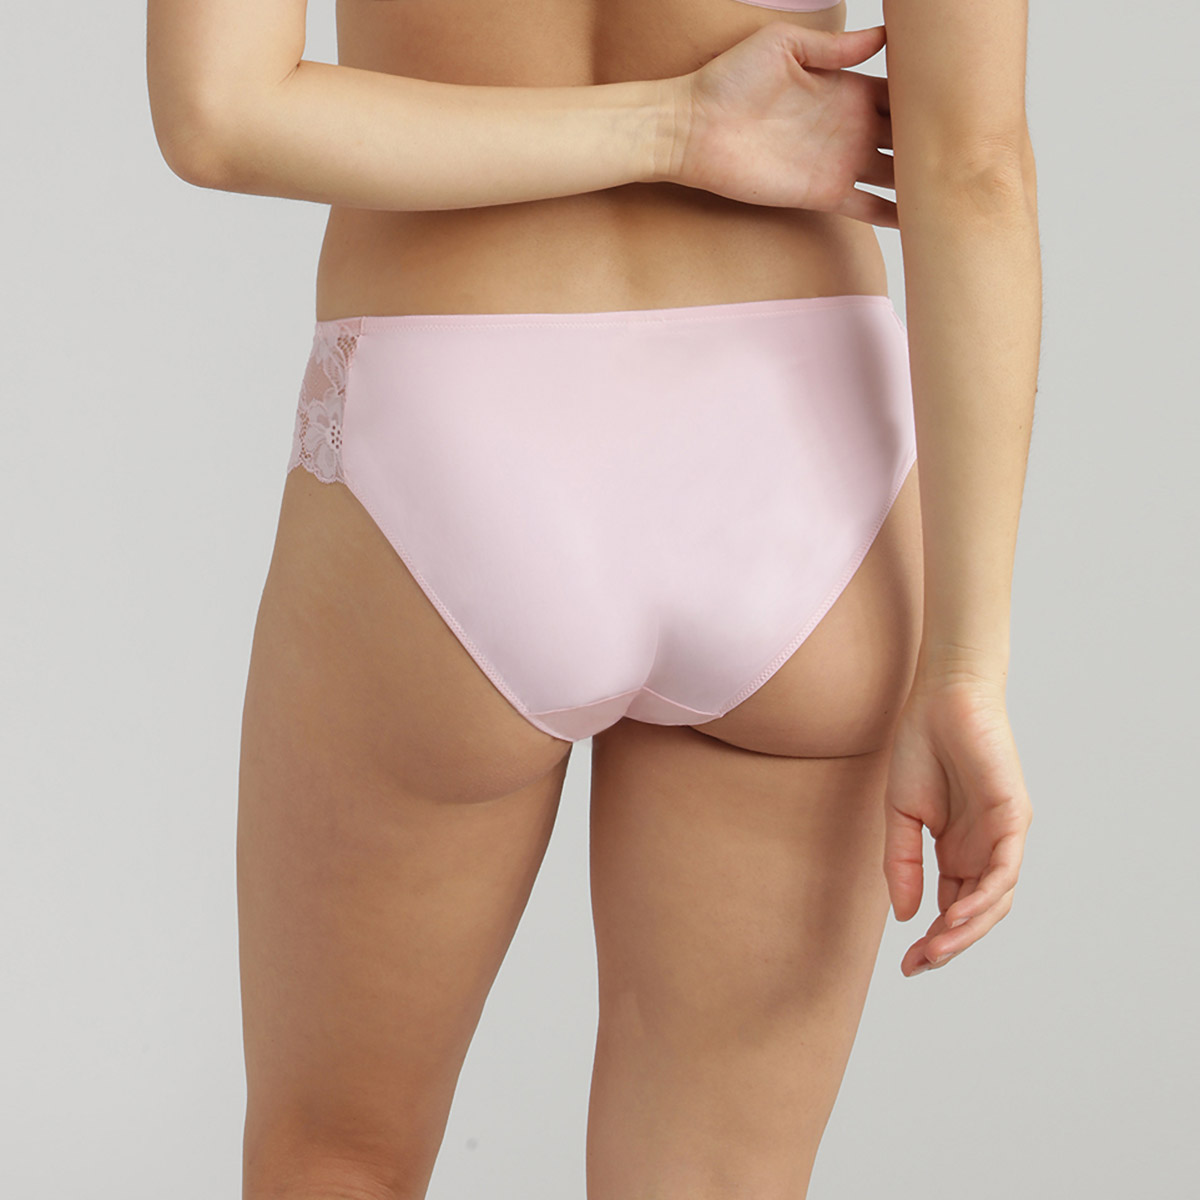 Bikini knickers in pastel pink - Essential Elegance, , PLAYTEX